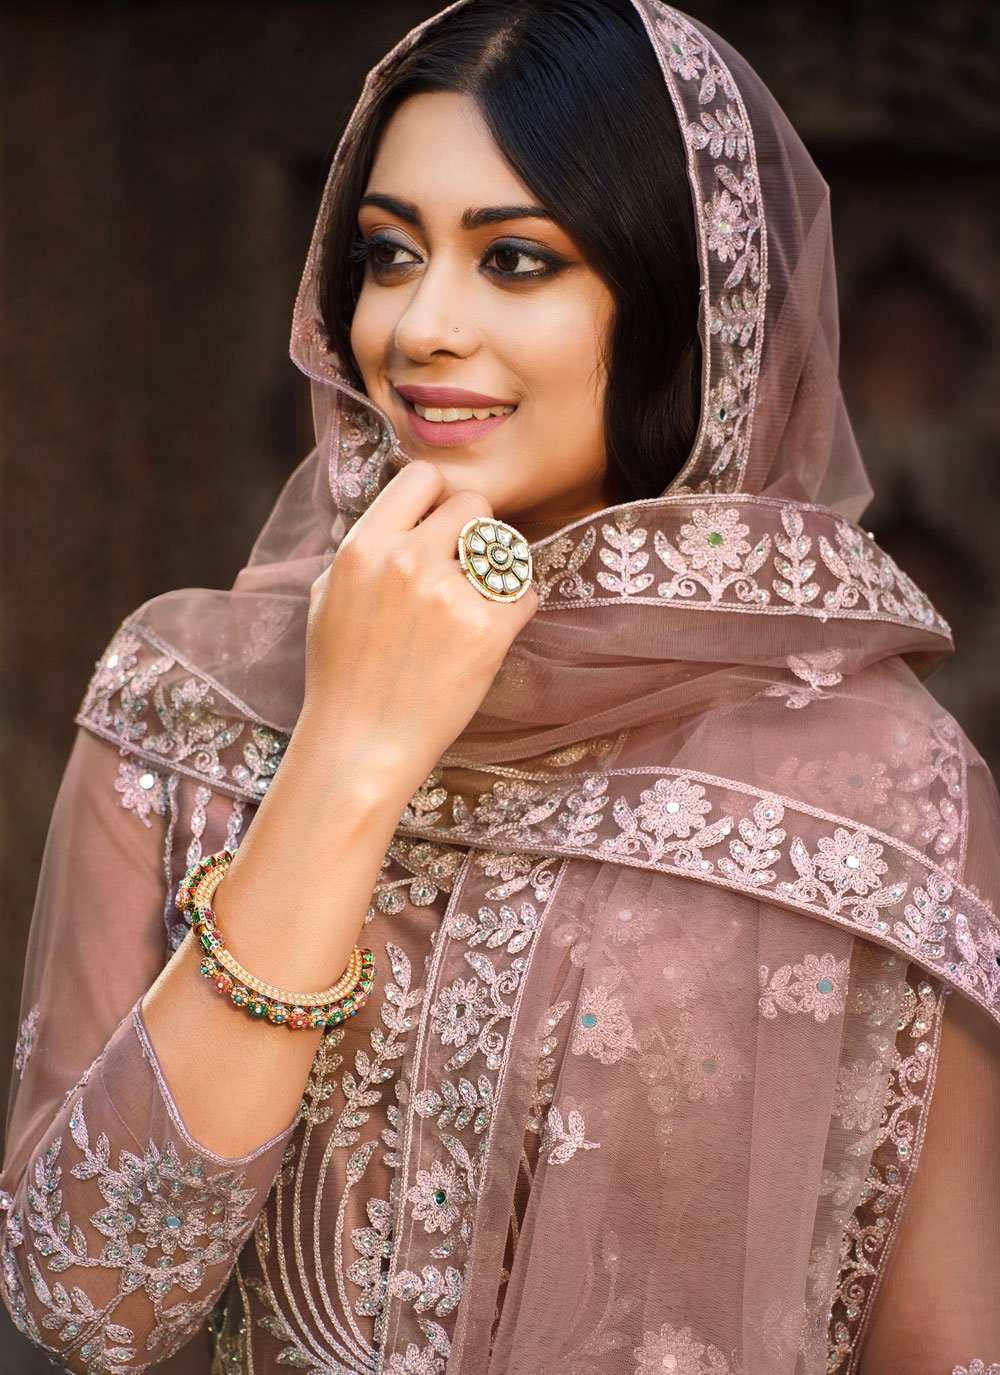 Anarkali Suit Net Pink Embroidered Salwar Kameez